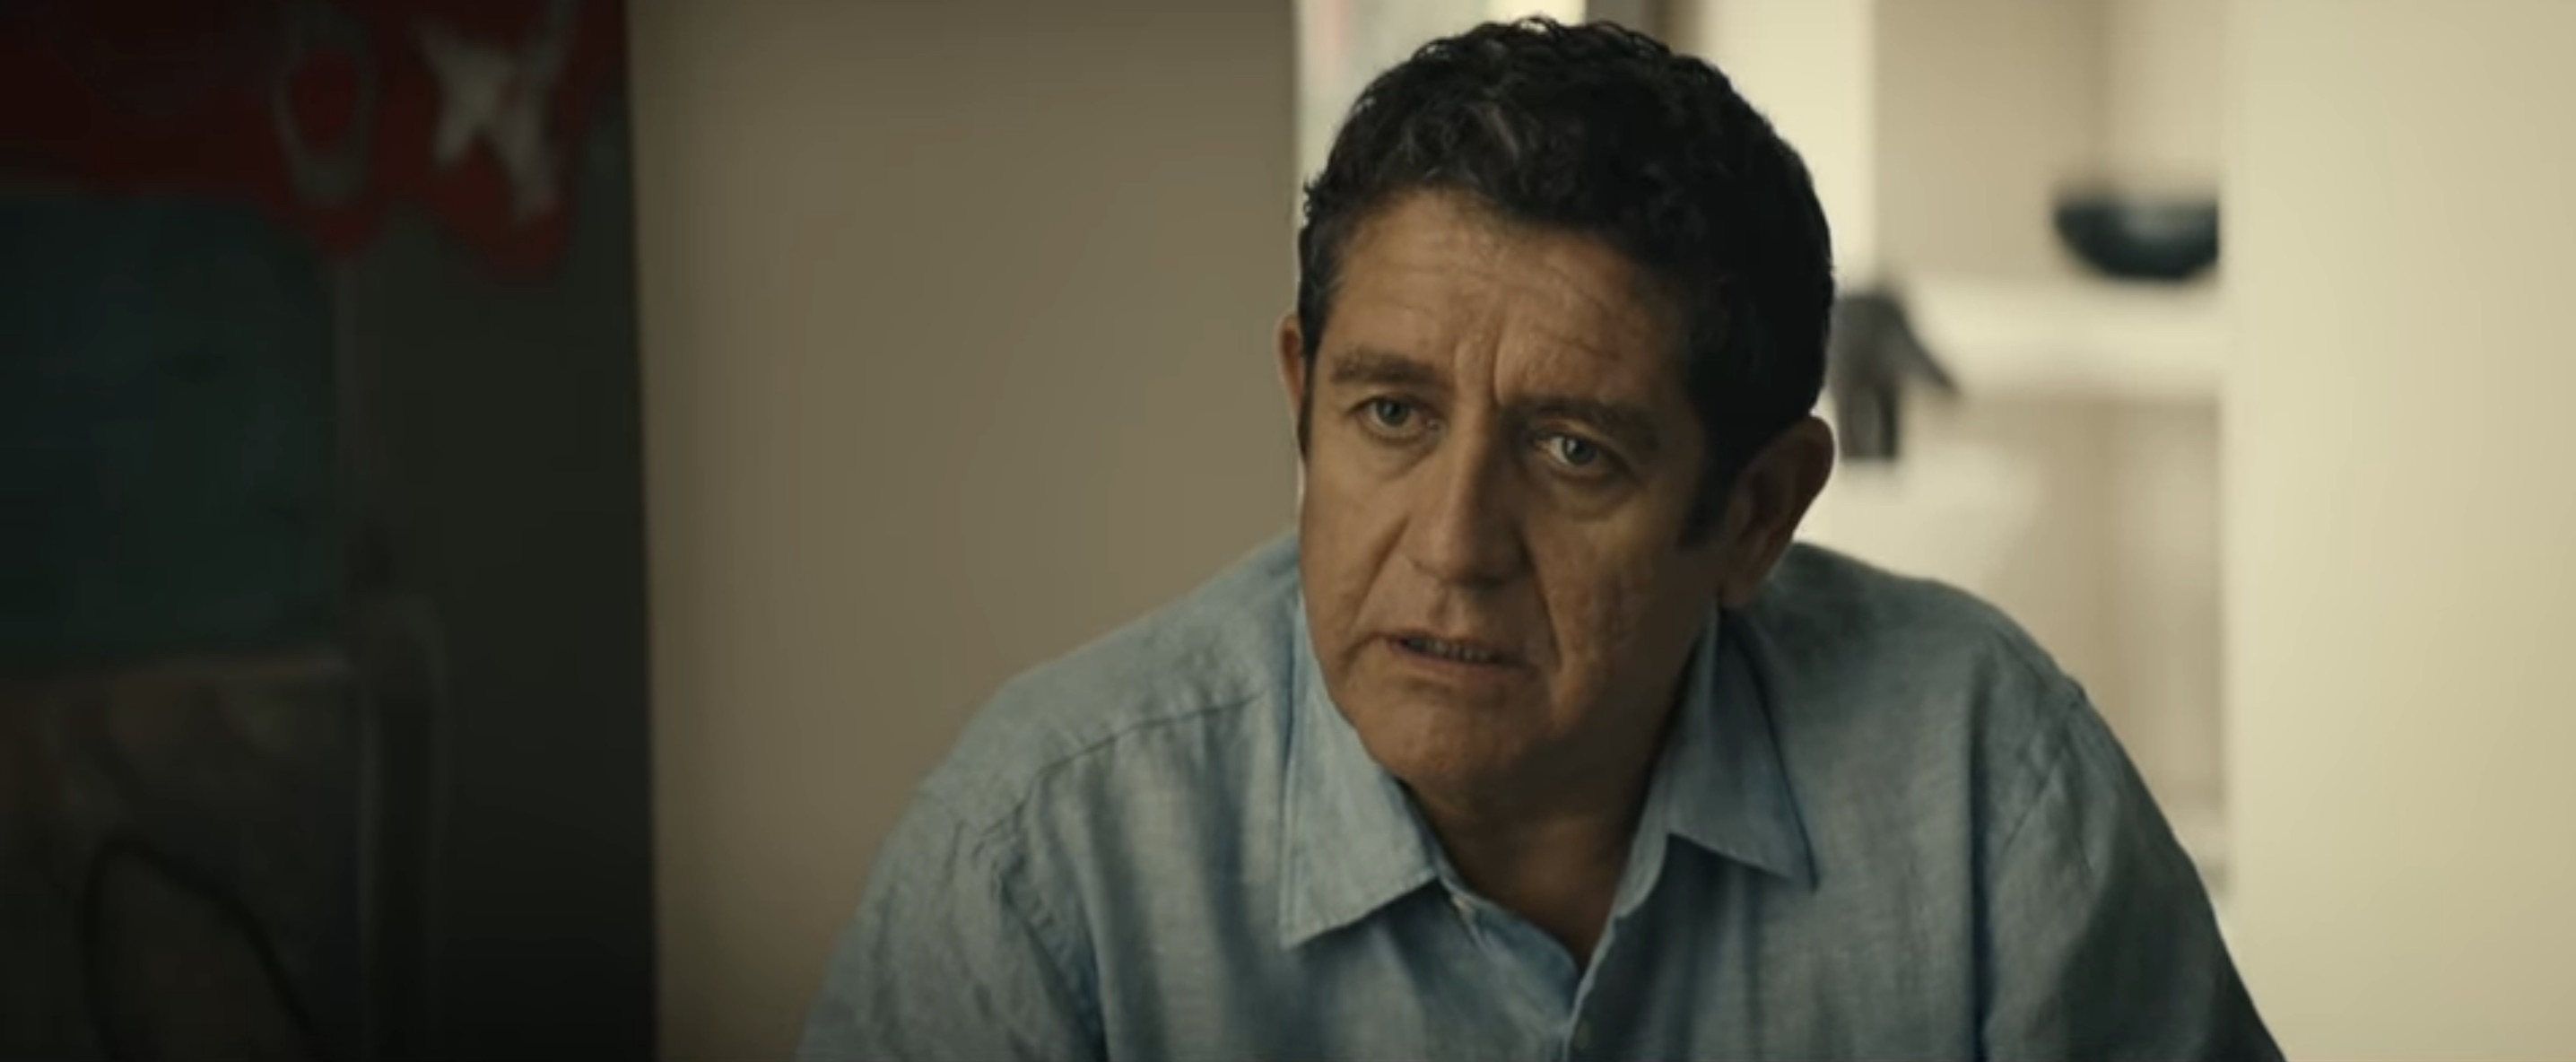 Under Her Control Cast on Netflix - Pedro Casablanc as Julio